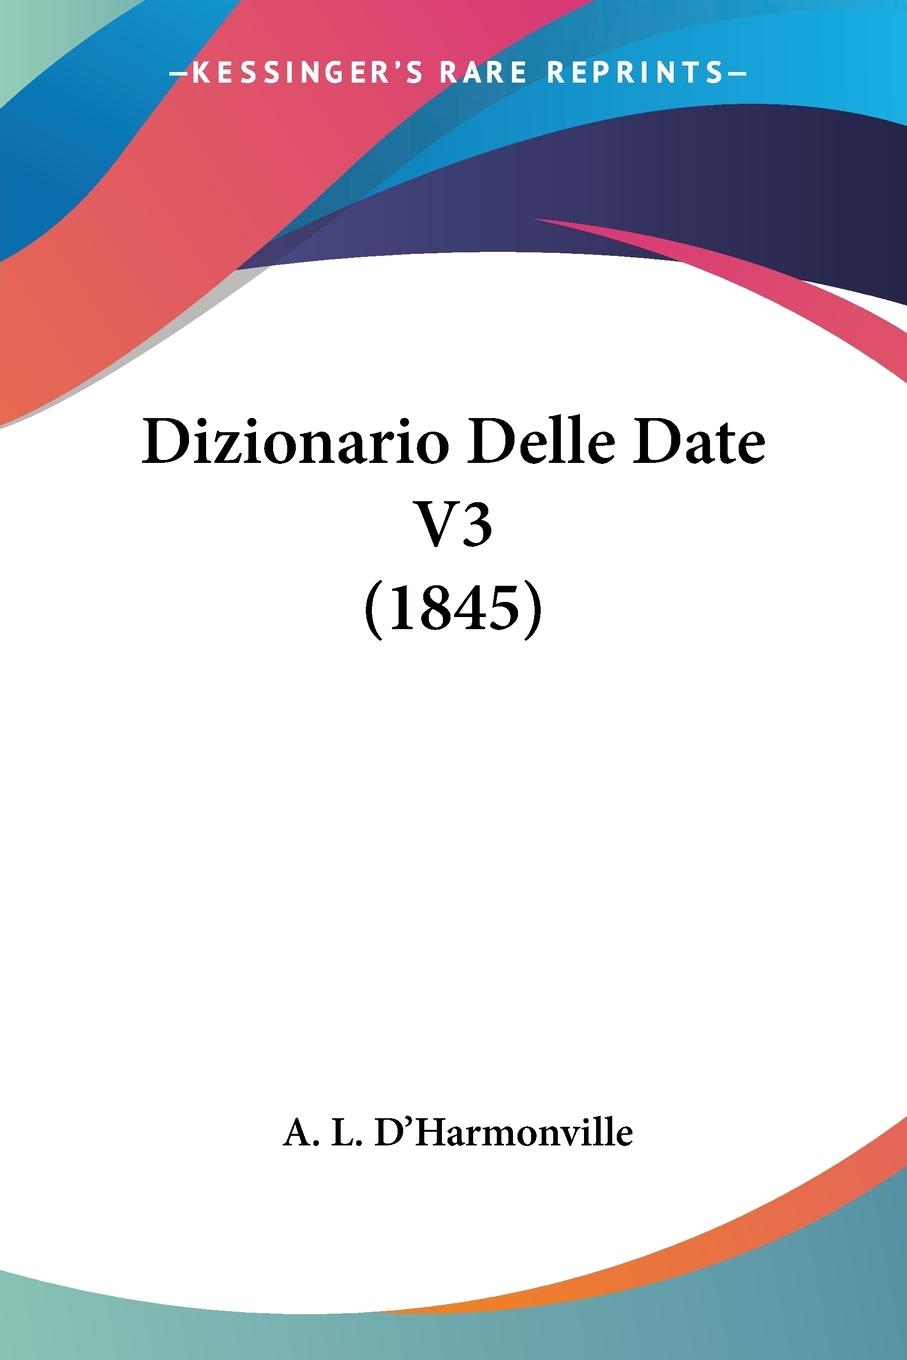 Dizionario Delle Date V3 (1845) - D Harmonville, A. L.